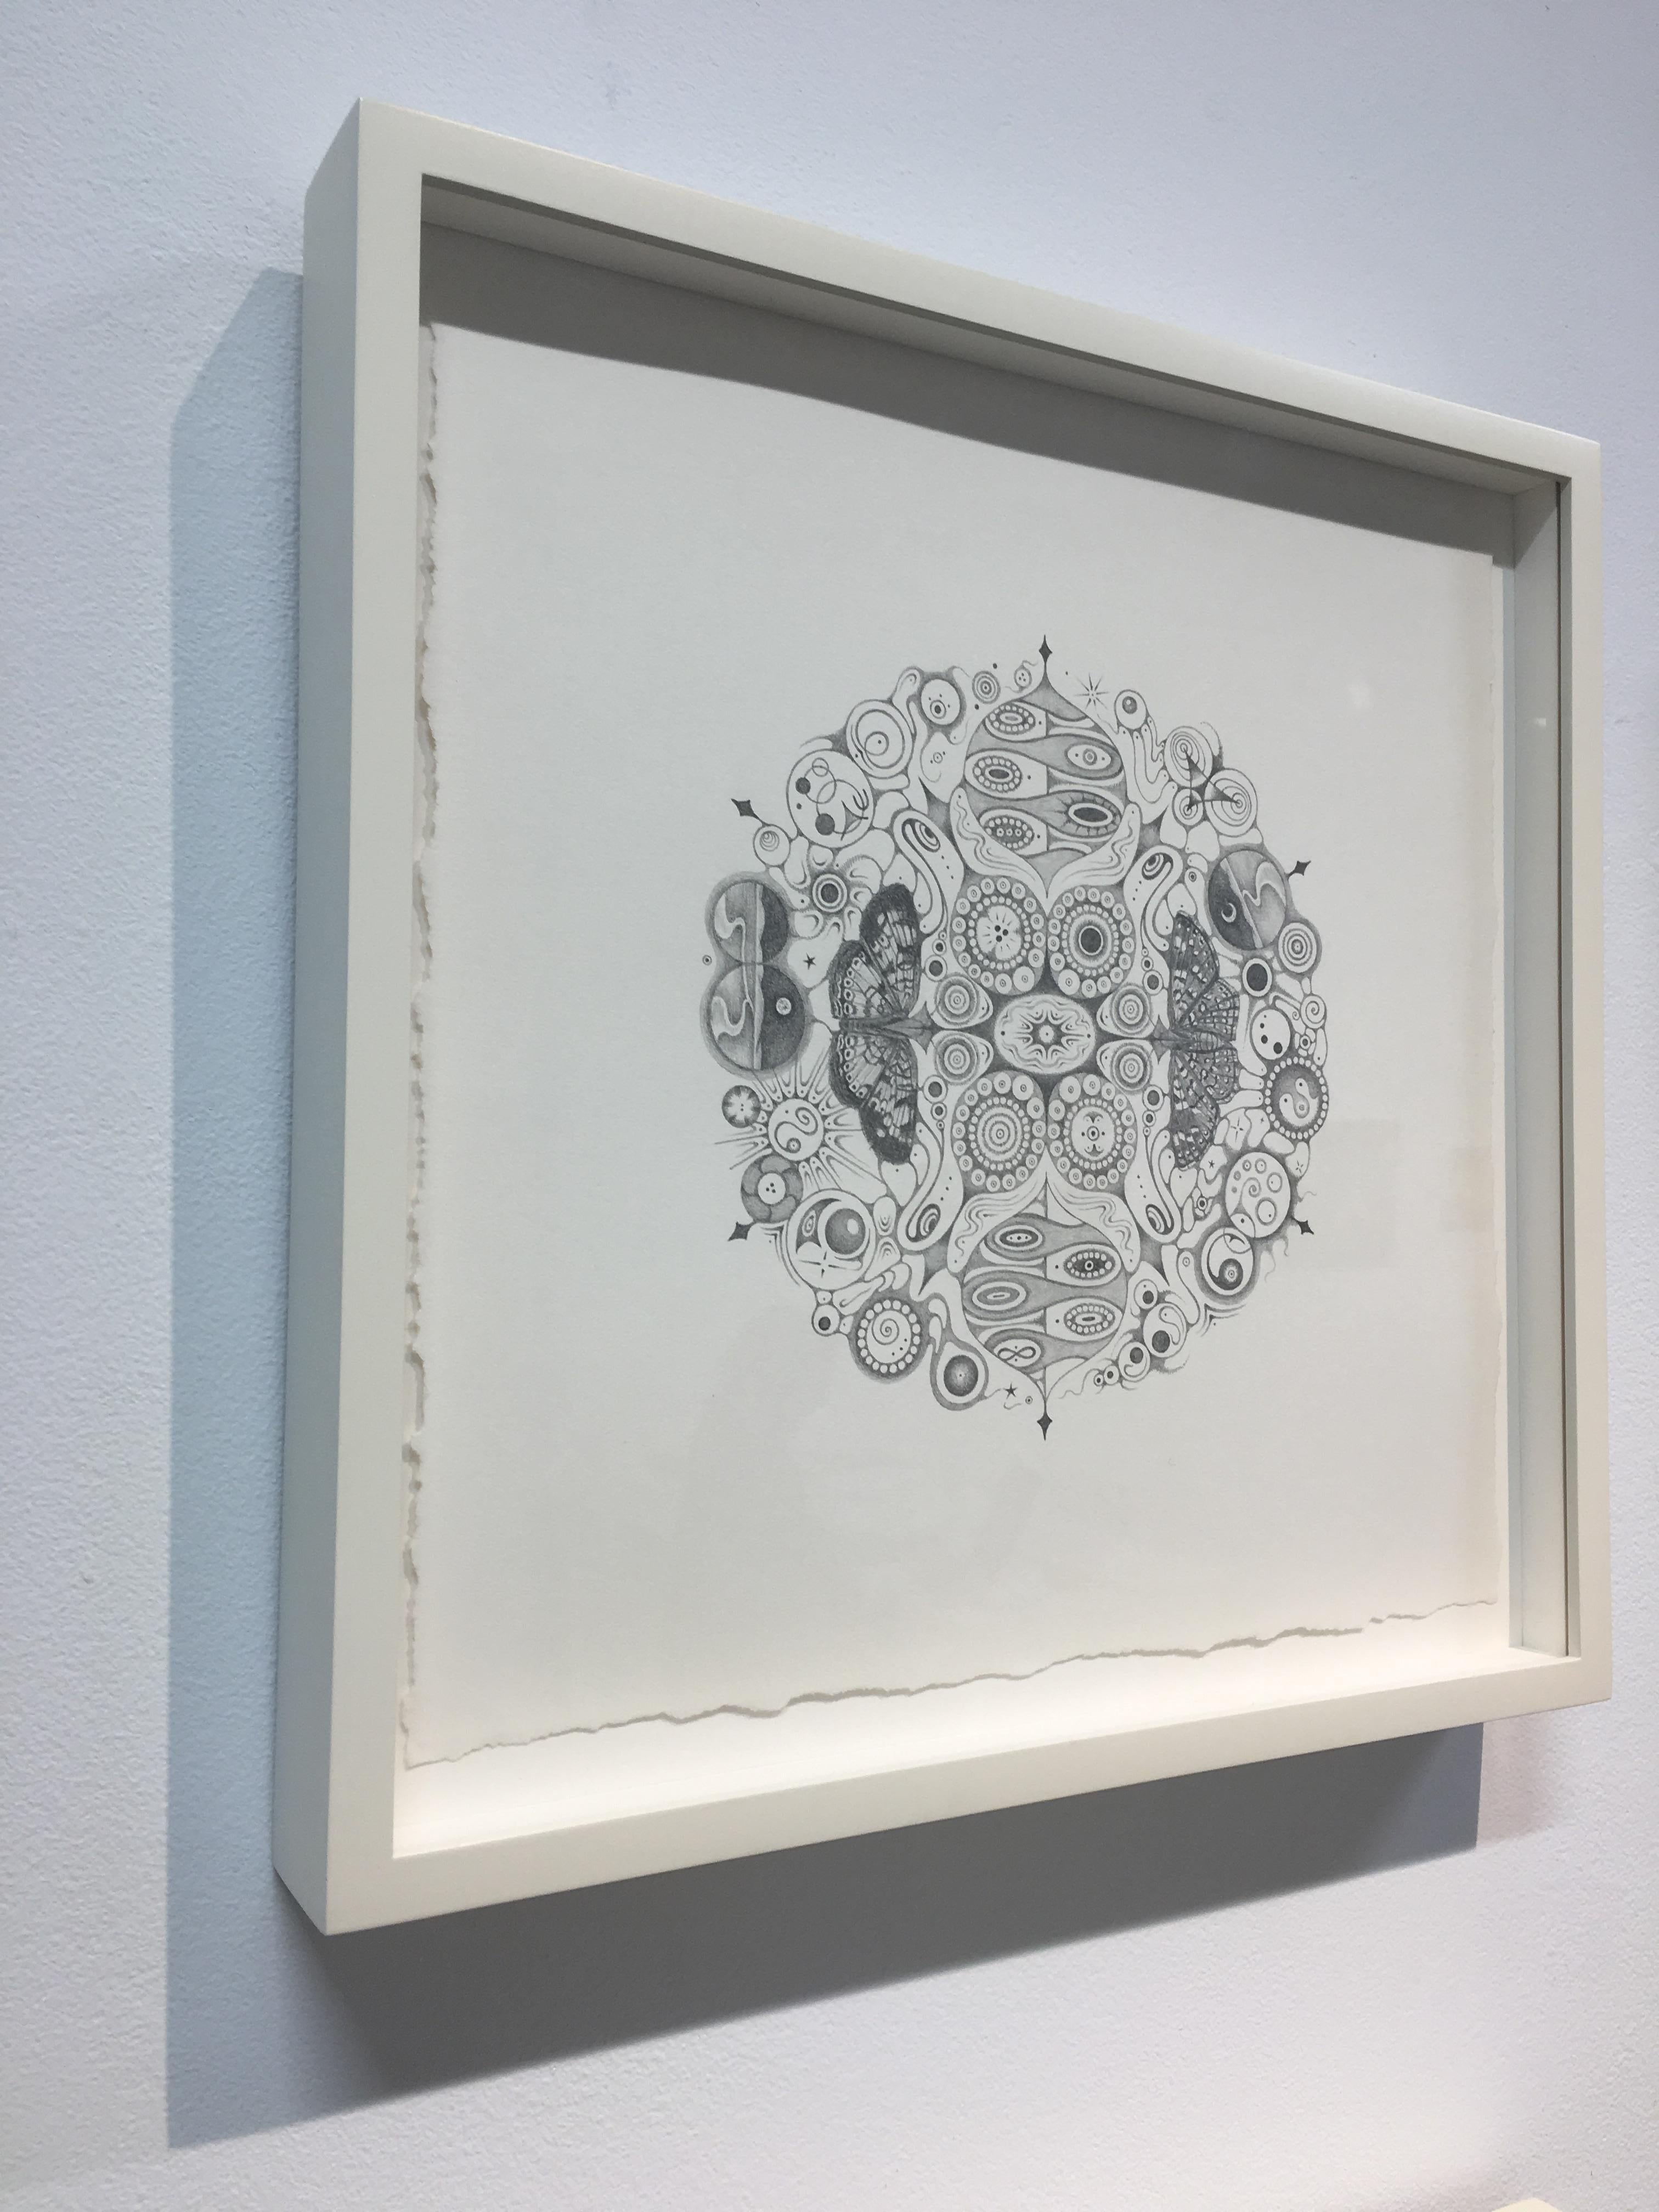 Schneeflocken 146 Joy, Mandala-Bleistiftzeichnung mit Schmetterlingen, Landschaften, Muster – Art von Michiyo Ihara